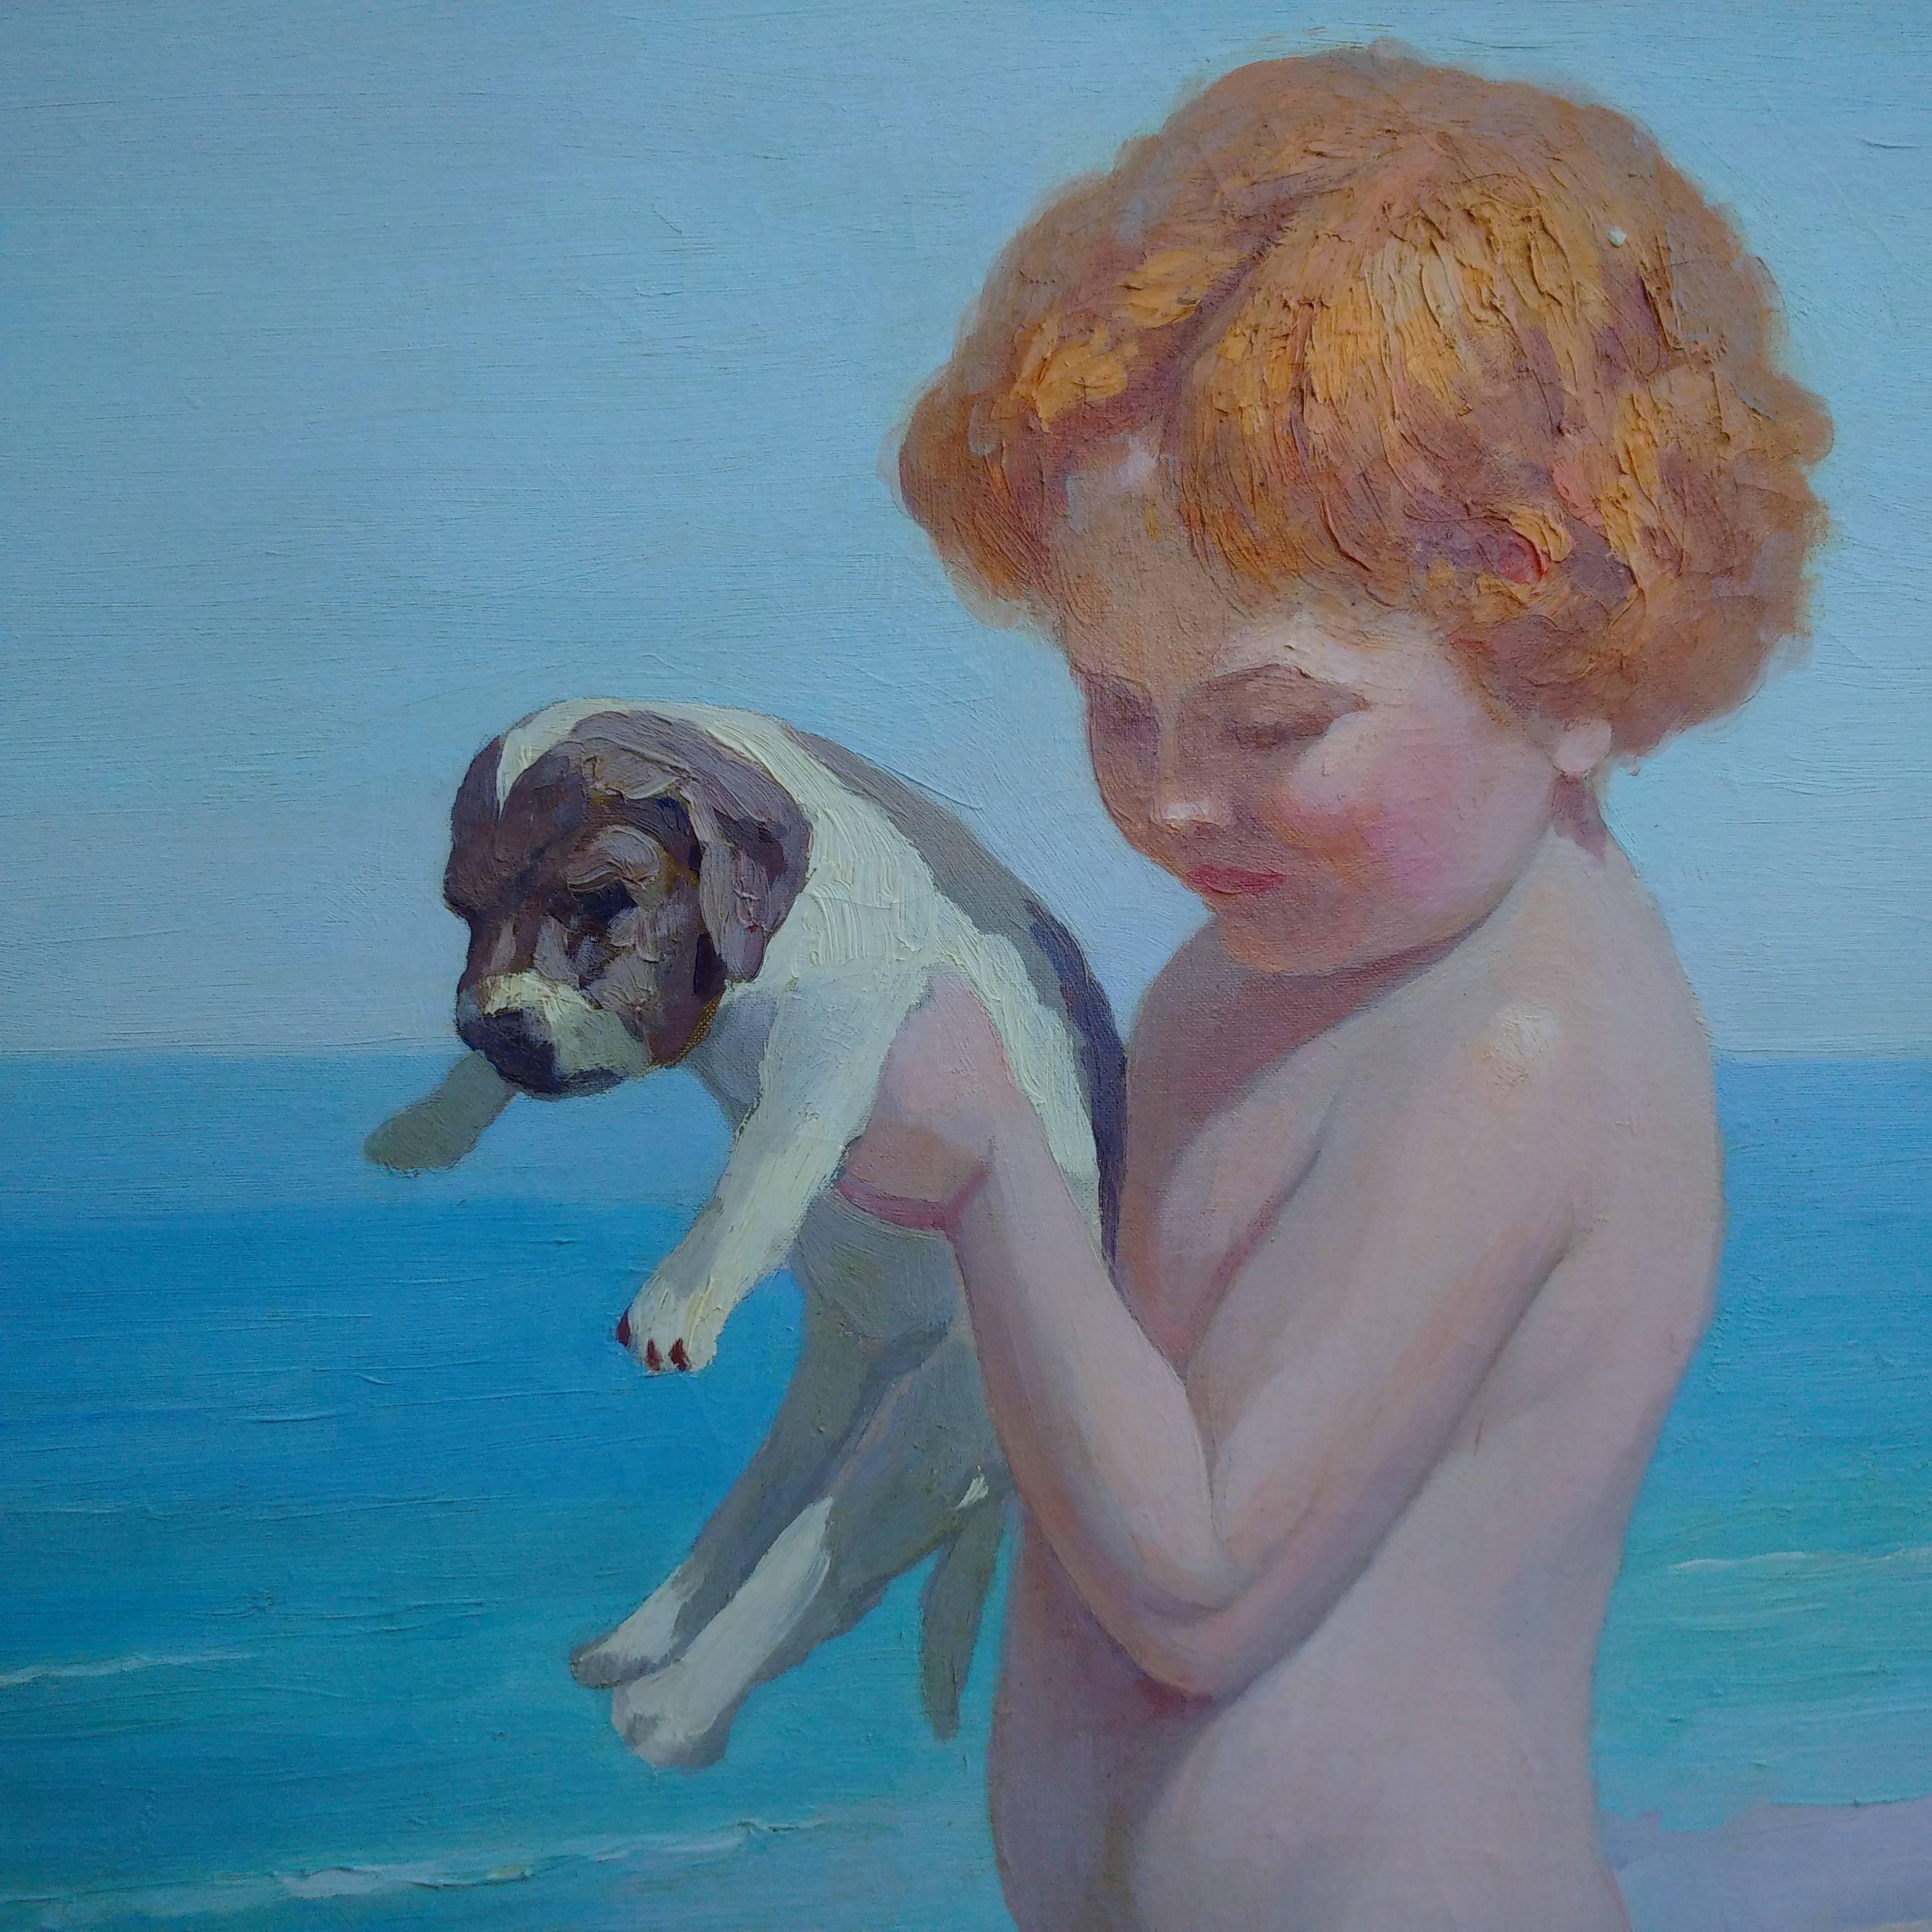 Child and Baby Dogs on the Beach (Enfant et bébé chiens à la plage), Nicolas-Saleem Macsoud - Painting de Nicholas Saleem Macsoud